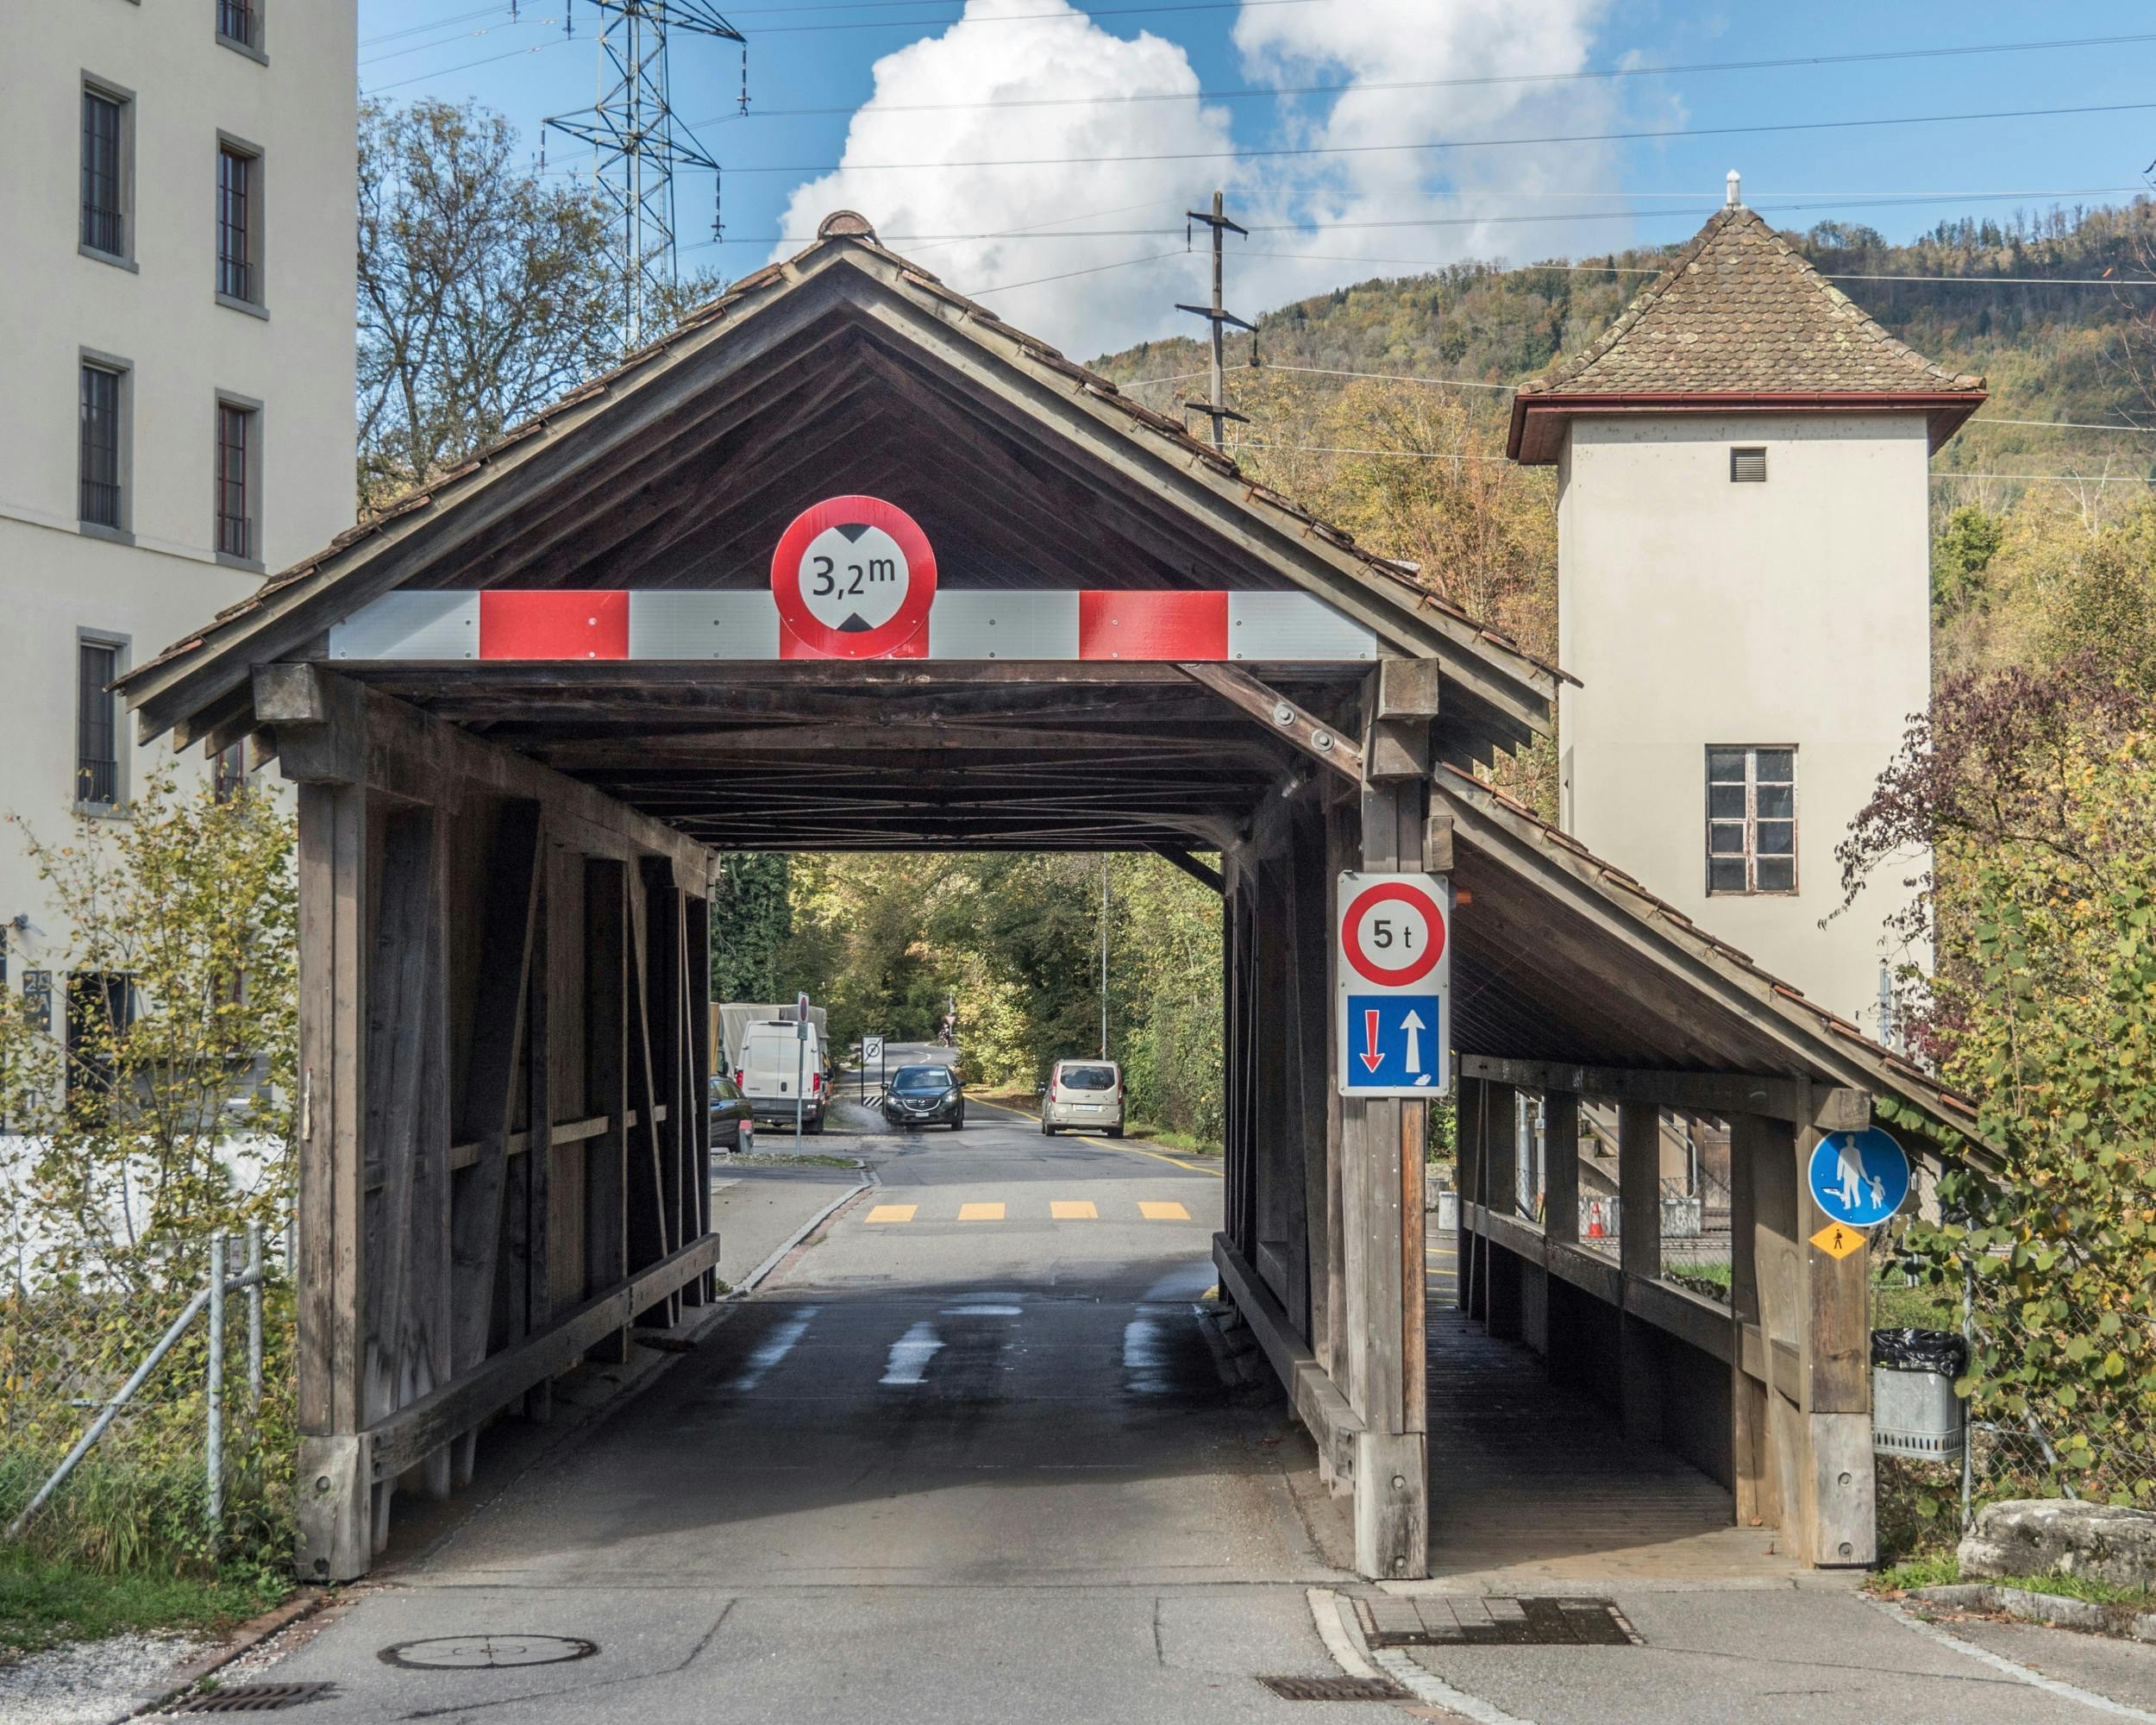 Rupperswill er en by med cirka 5000 indbyggere i det nordlige Schweiz. 